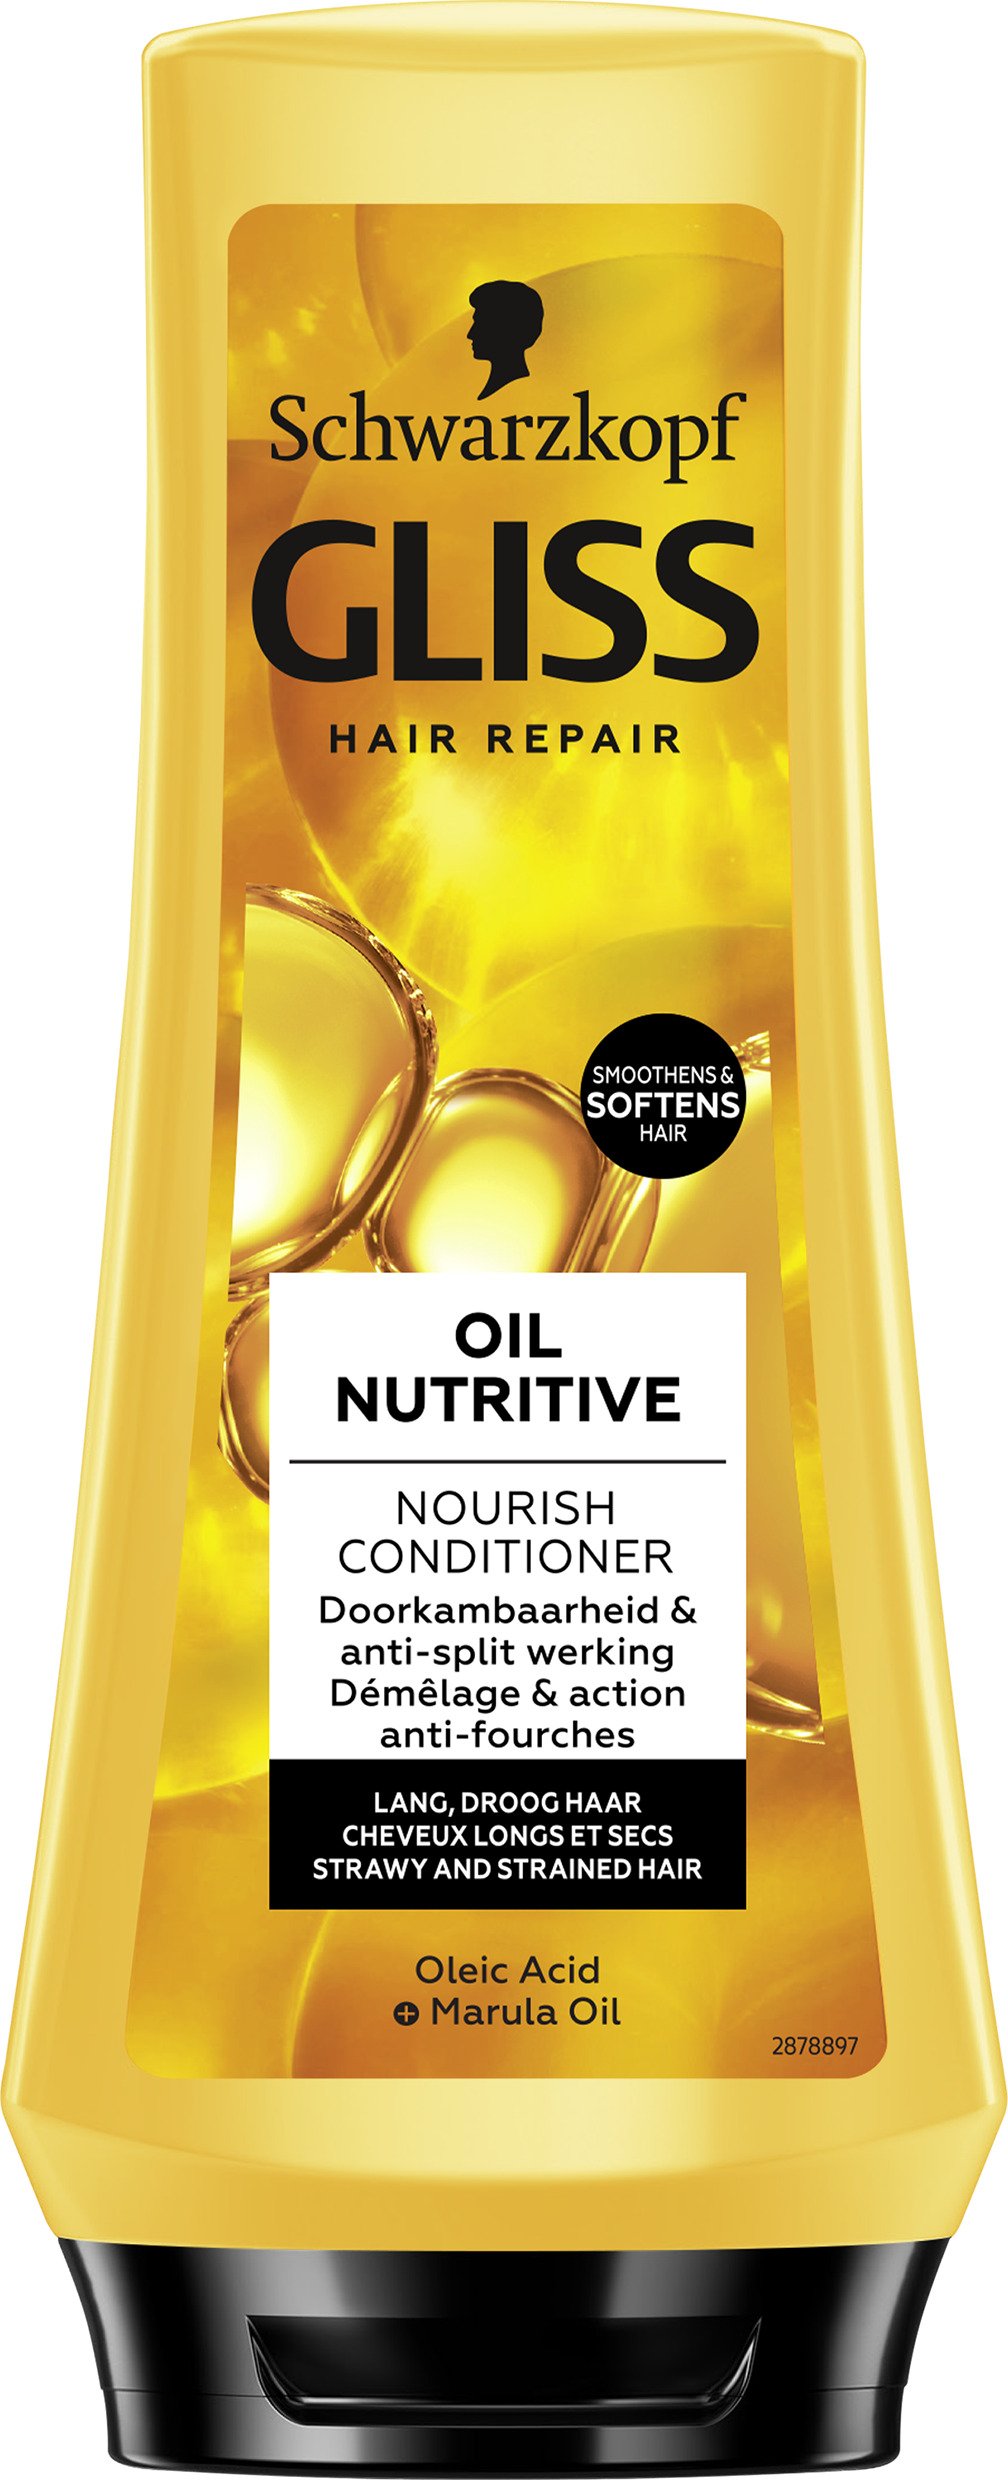 Schwarzkopf Gliss Hair Repair Oil Nutritive Nourish Conditioner 200 ml